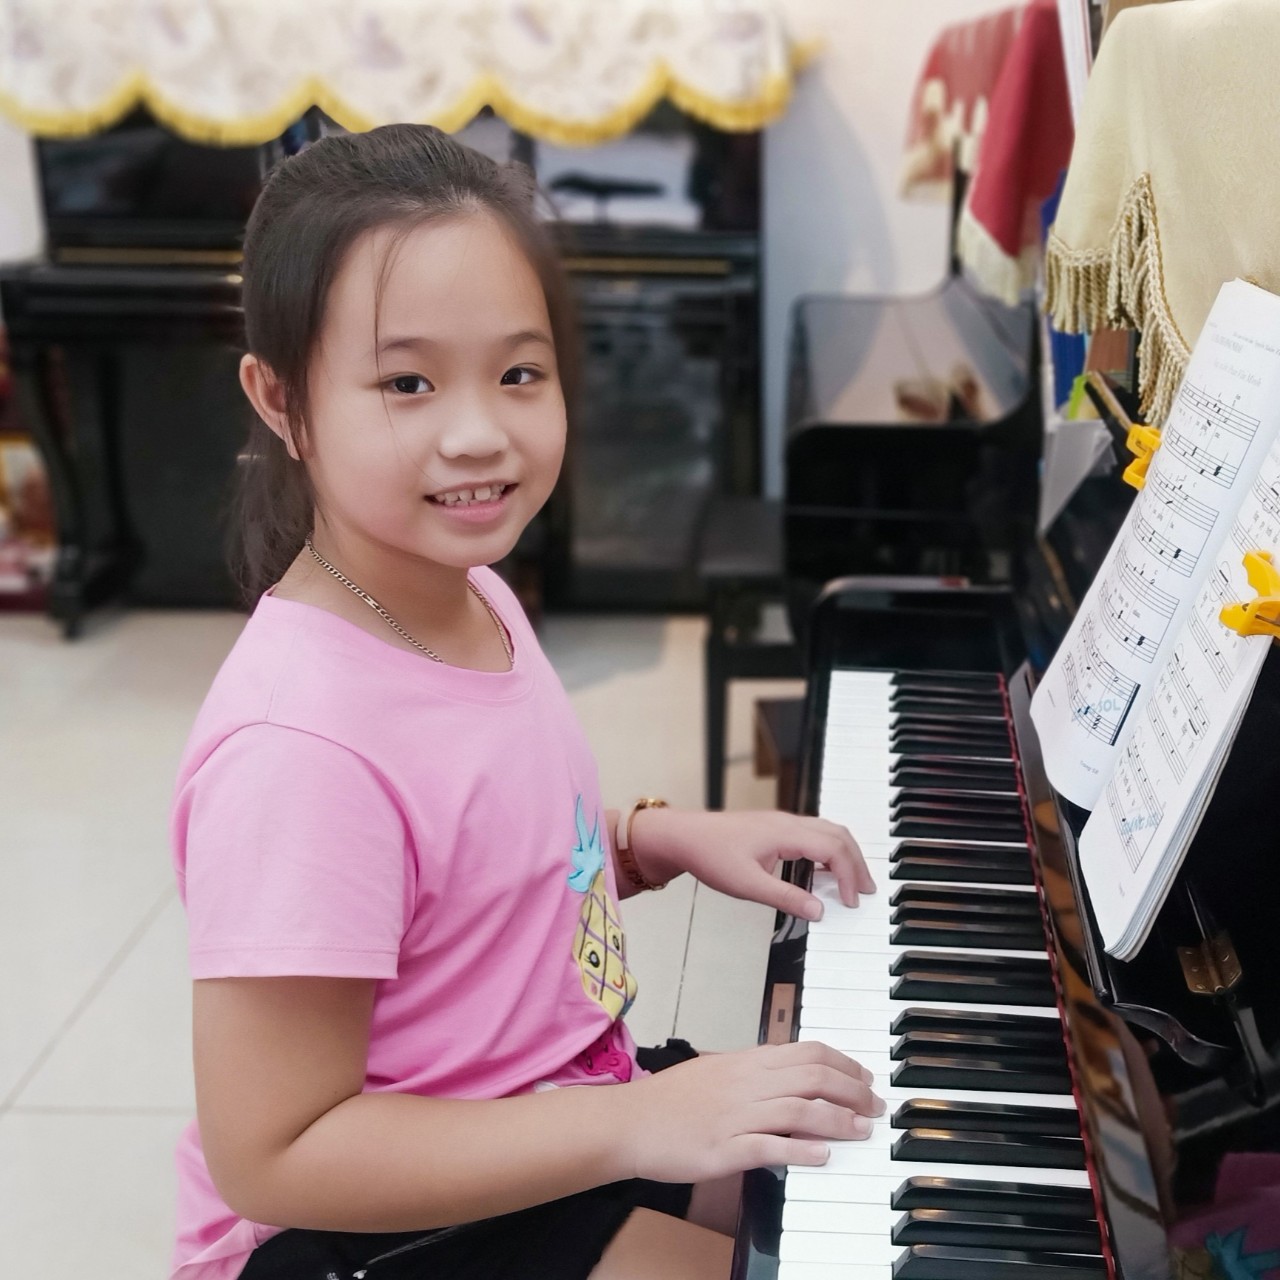 TƯ THẾ TAY CHUẨN KHI HỌC ĐÀN PIANO, dạy đàn piano cho trẻ dưới 5 tuổi, lớp nhạc thiếu nhi quận 12, trung tâm âm nhạc cơ bản cho bé, lớp Piano cho người mới bắt đầu, nơi dạy đàn cho người lớn quận 12, lớp nhạc giáng sol quận 12, lớp dạy đàn piano cơ quận 12